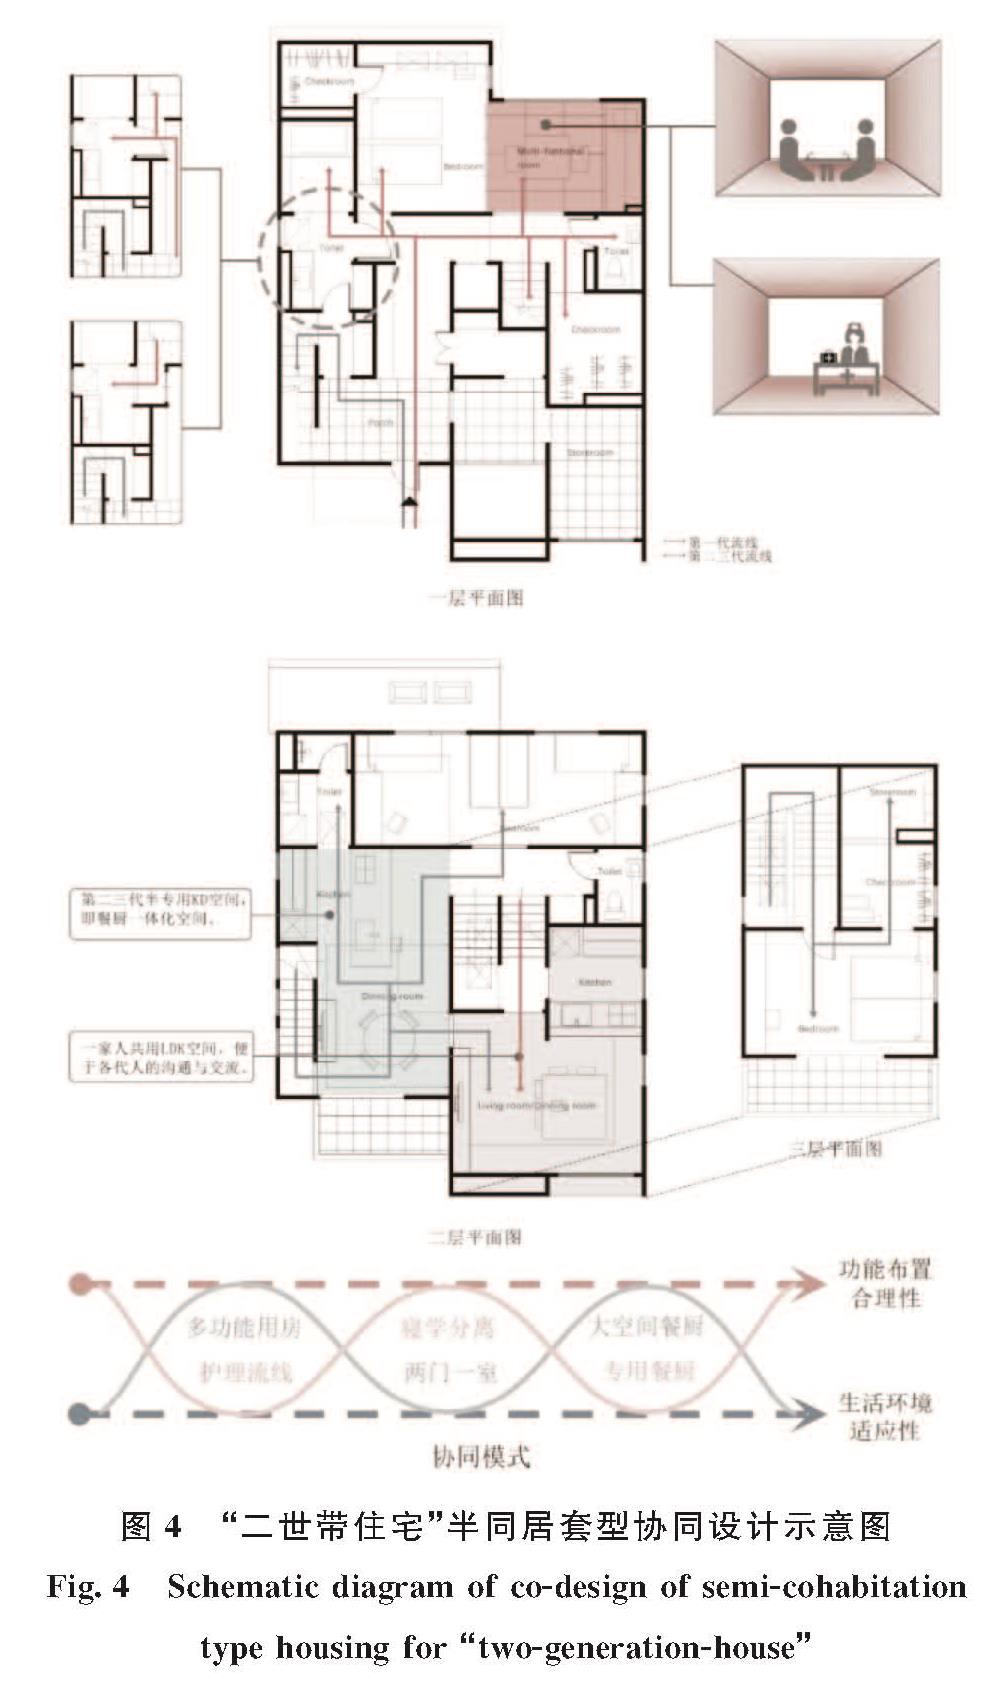 图4 “二世带住宅”半同居套型协同设计示意图<br/>Fig.4 Schematic diagram of co-design of semi-cohabitation type housing for “two-generation-house”